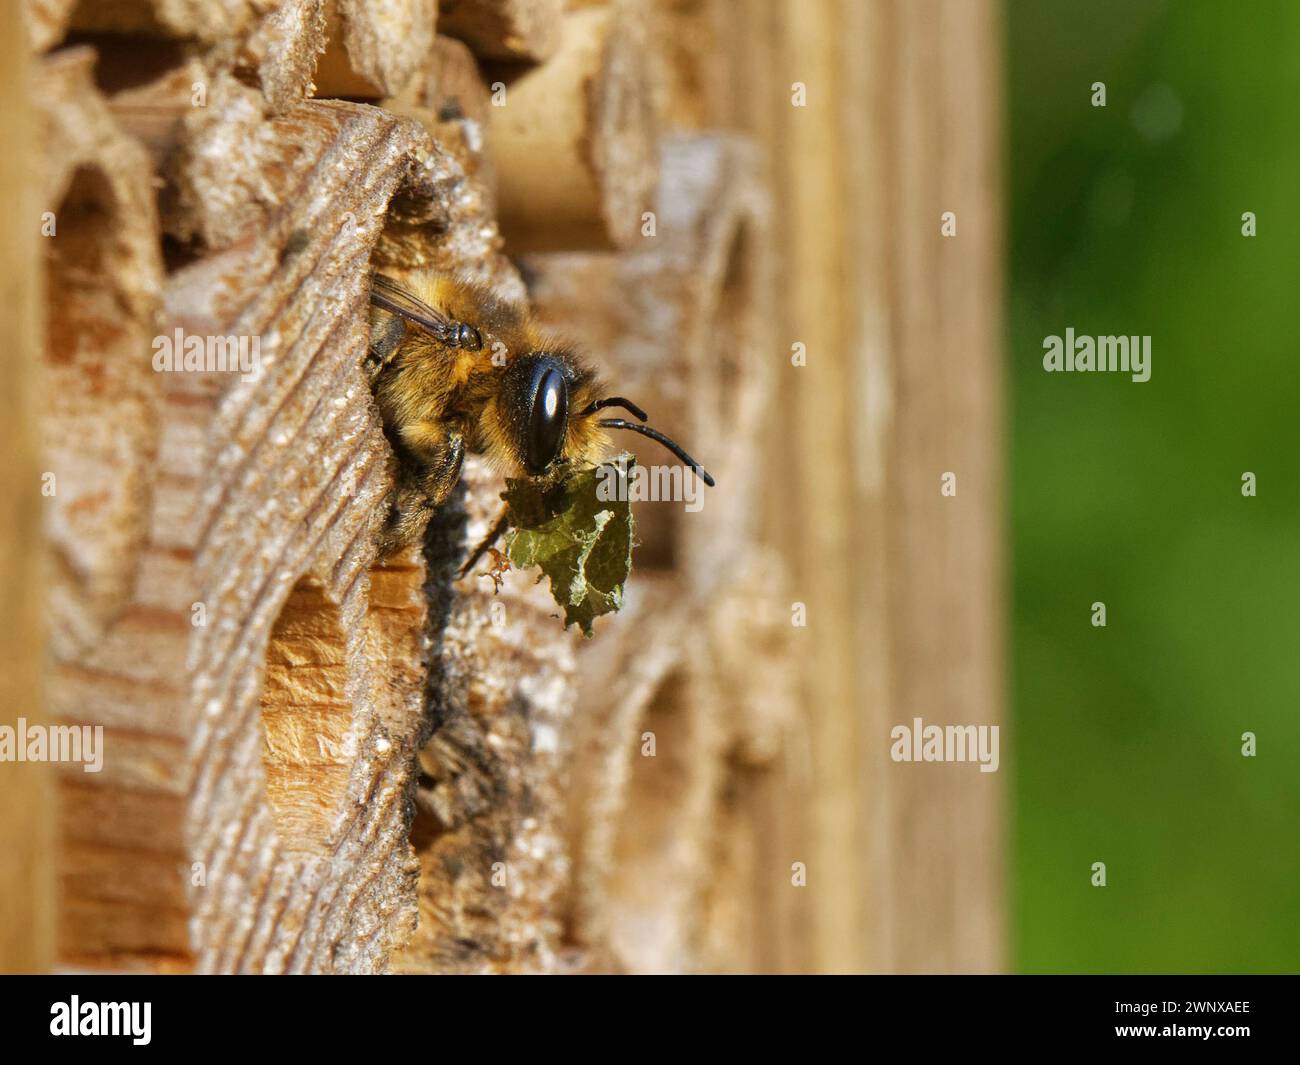 Femmina di taglialegna (Megachile ligniseca) che rimuove i resti di un vecchio nido di api Leafcutter in un hotel di insetti prima di costruirne uno proprio Foto Stock